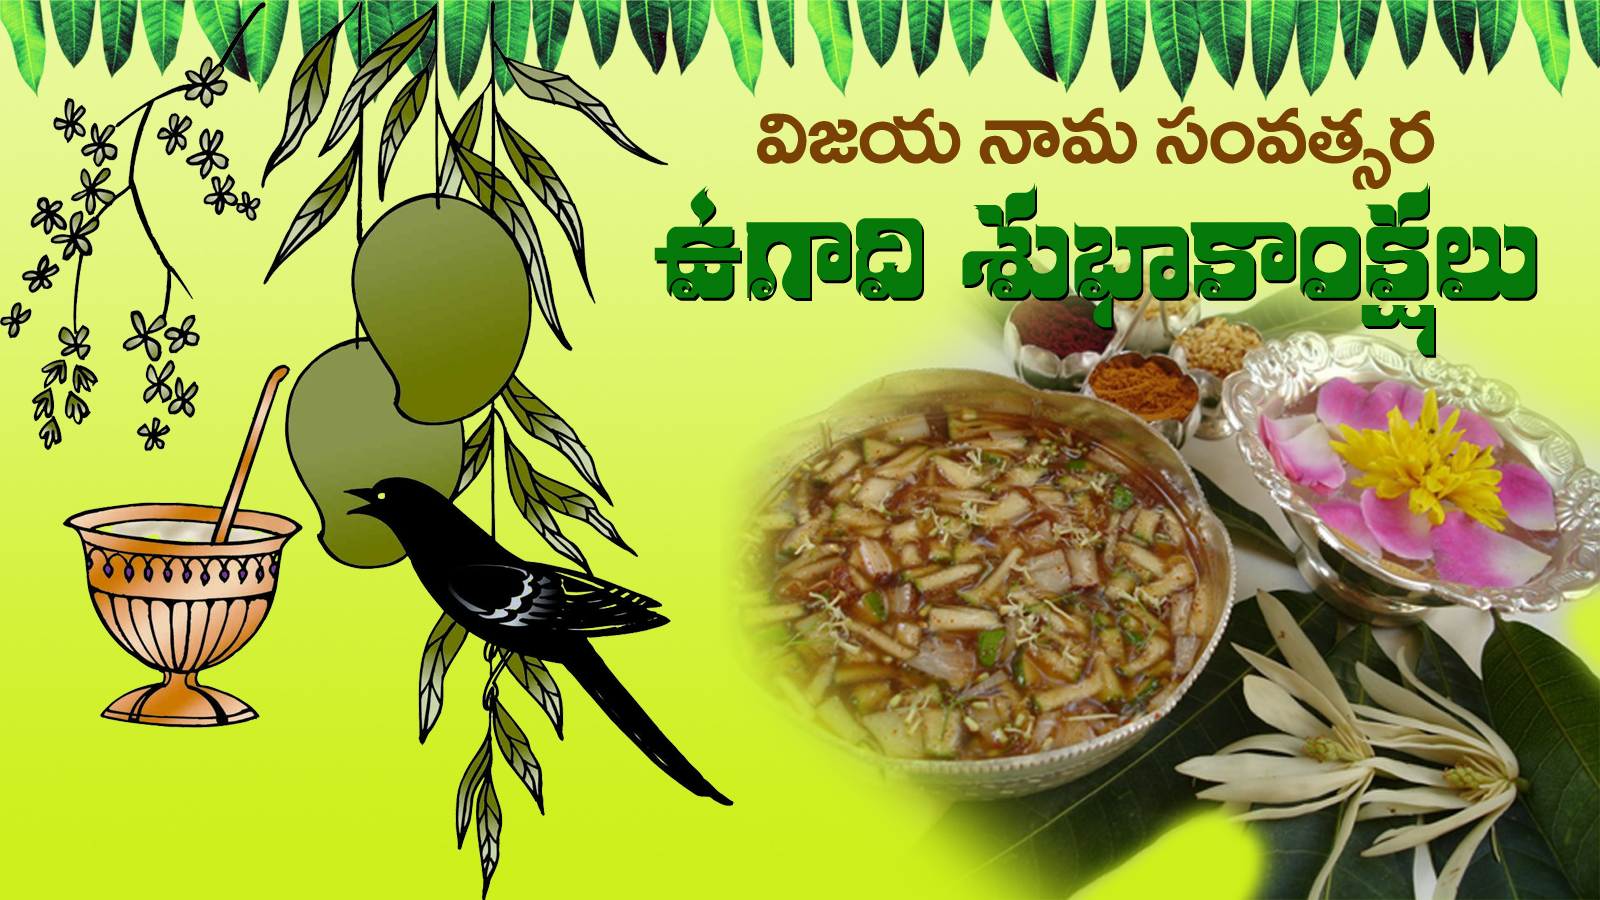 Happy Ugadi To You Wishes In Telugu